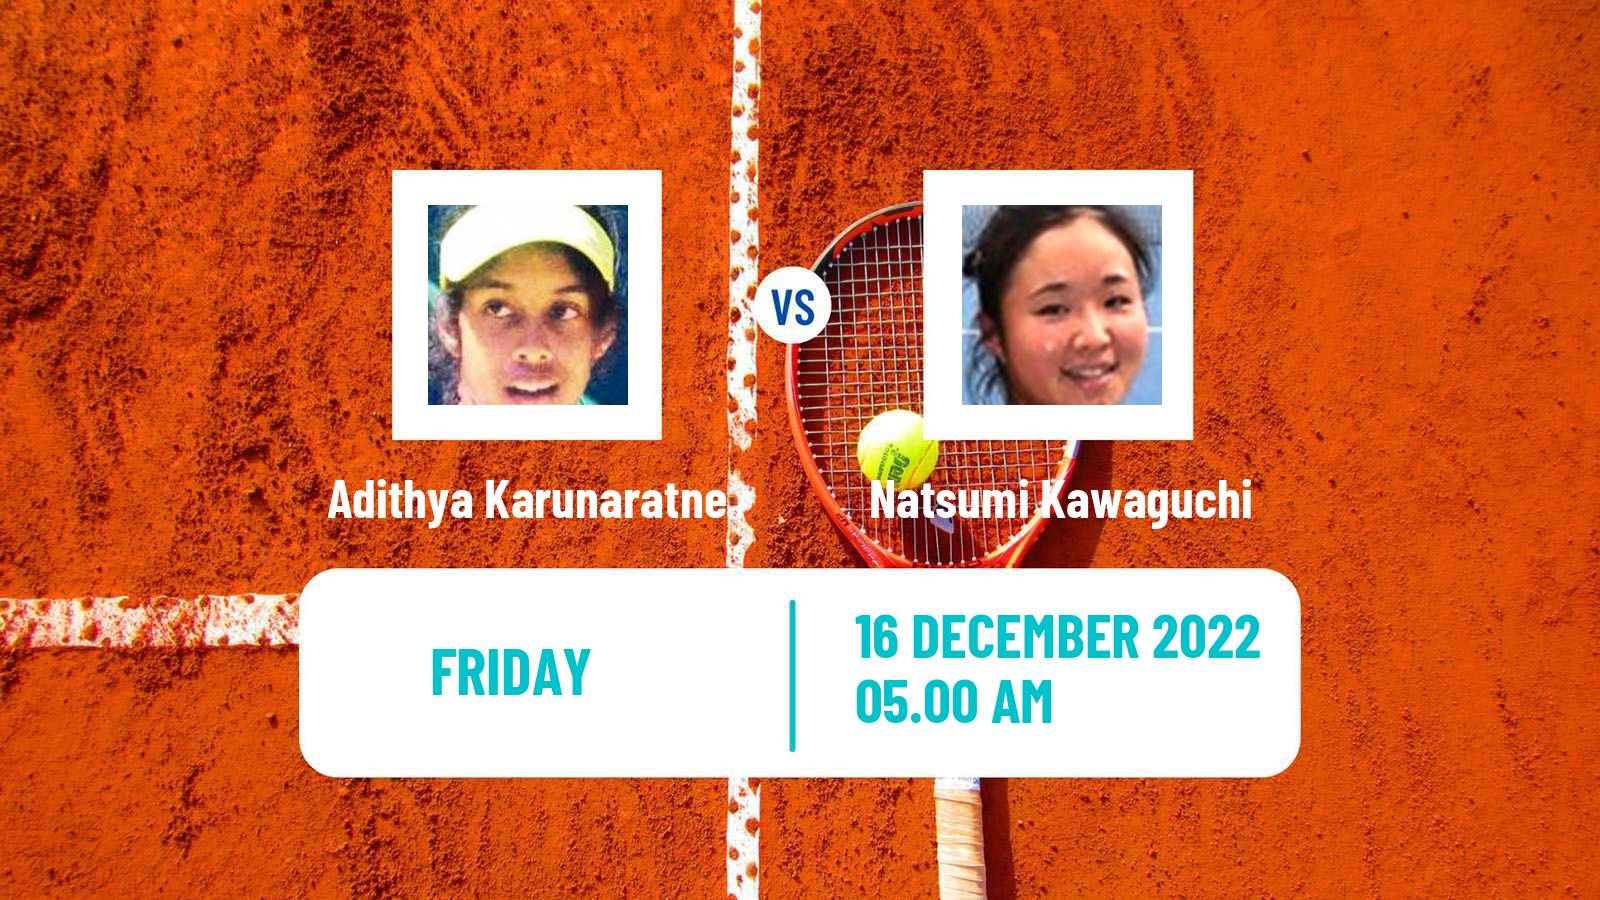 Tennis ITF Tournaments Adithya Karunaratne - Natsumi Kawaguchi